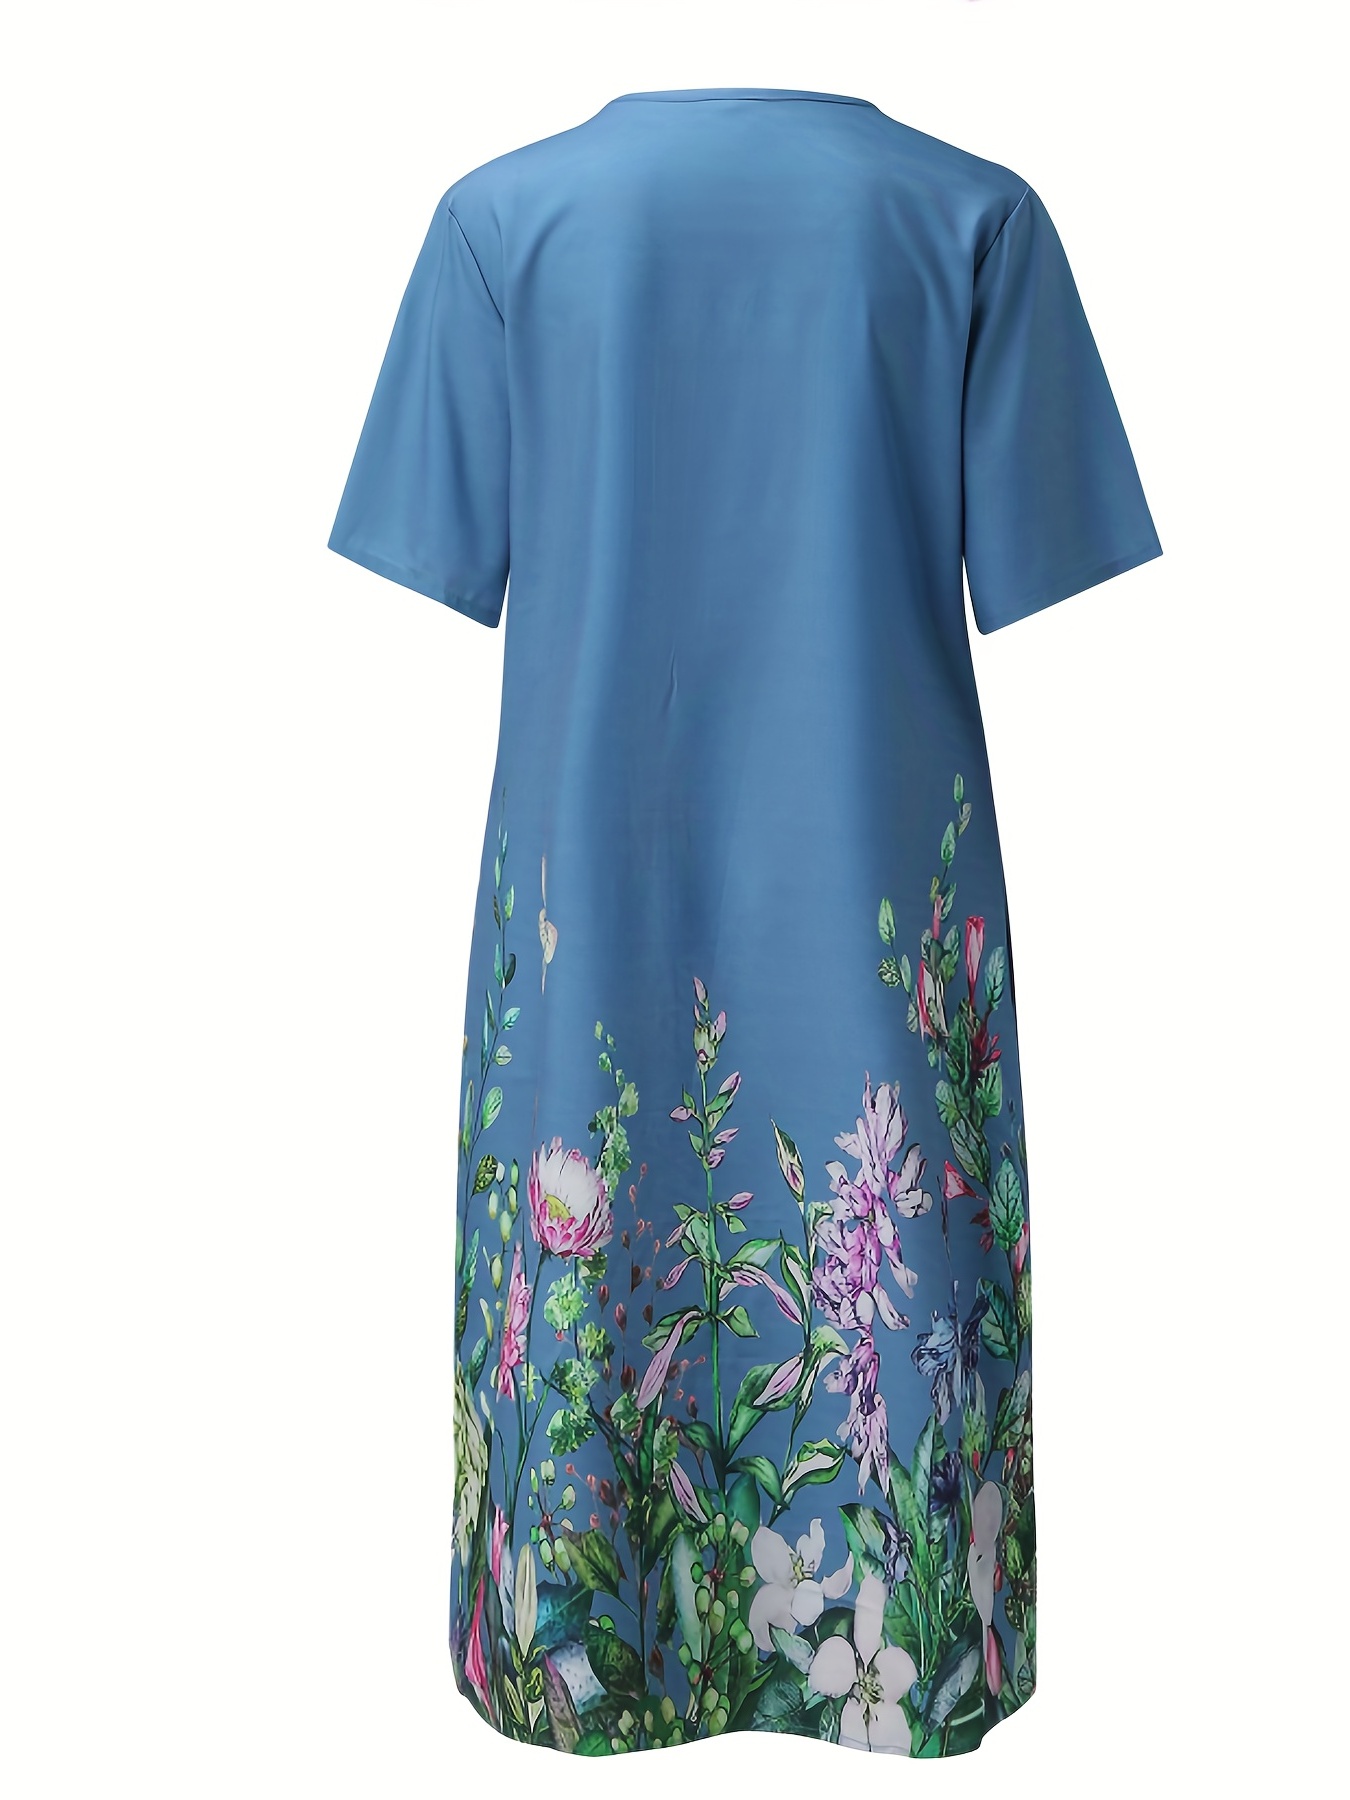 Çiçek Desenli Pilili Ön Elbise, Rahat Kısa Kollu Çift Cep Elbise, Kadın Giyim